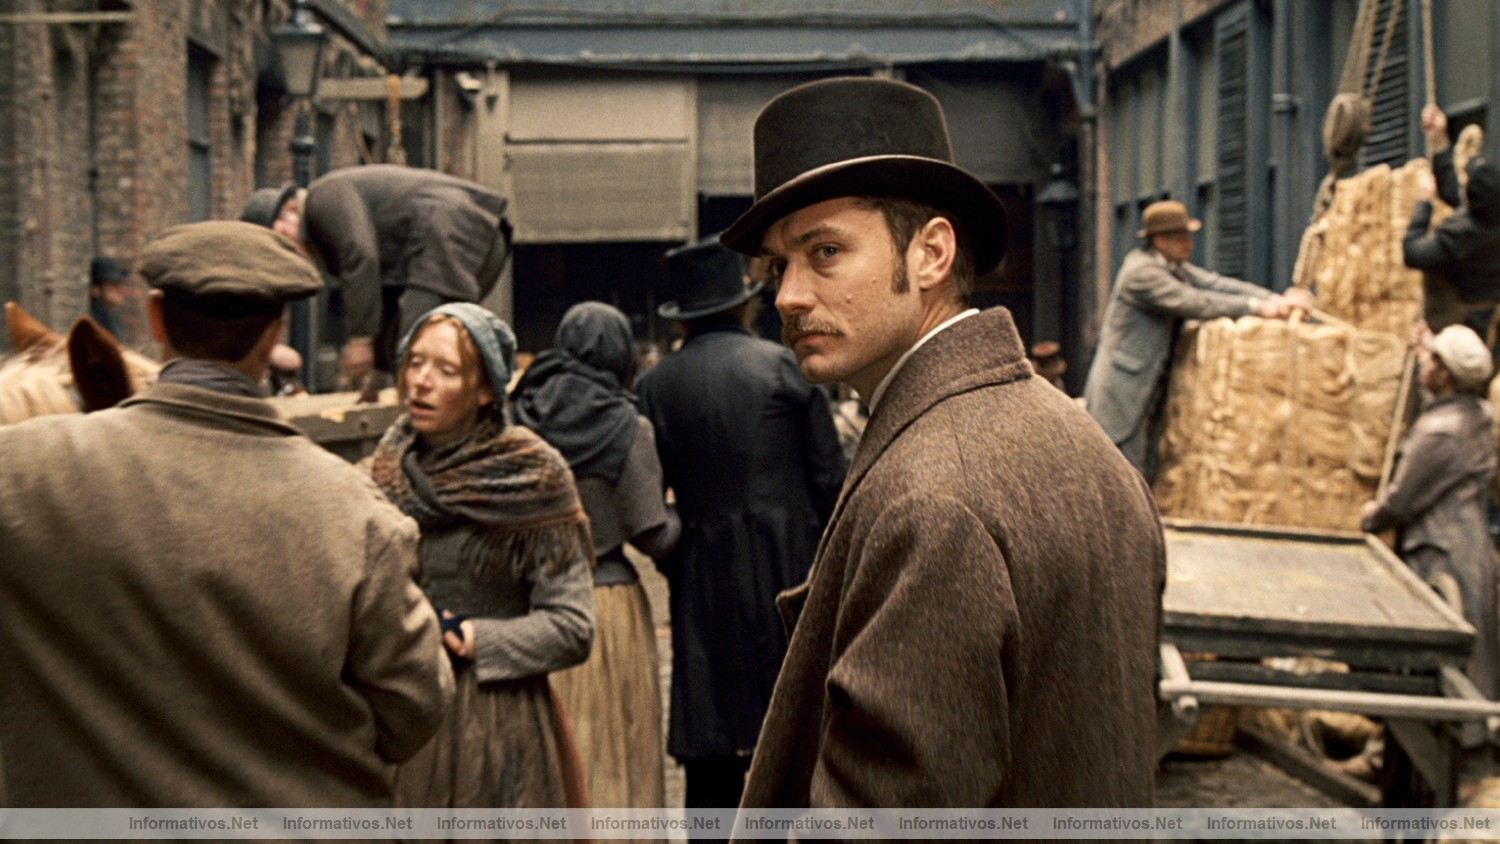 Fotograma de la película "Sherlock Holmes" que se estrenará en España el 15 de Enero de 2010